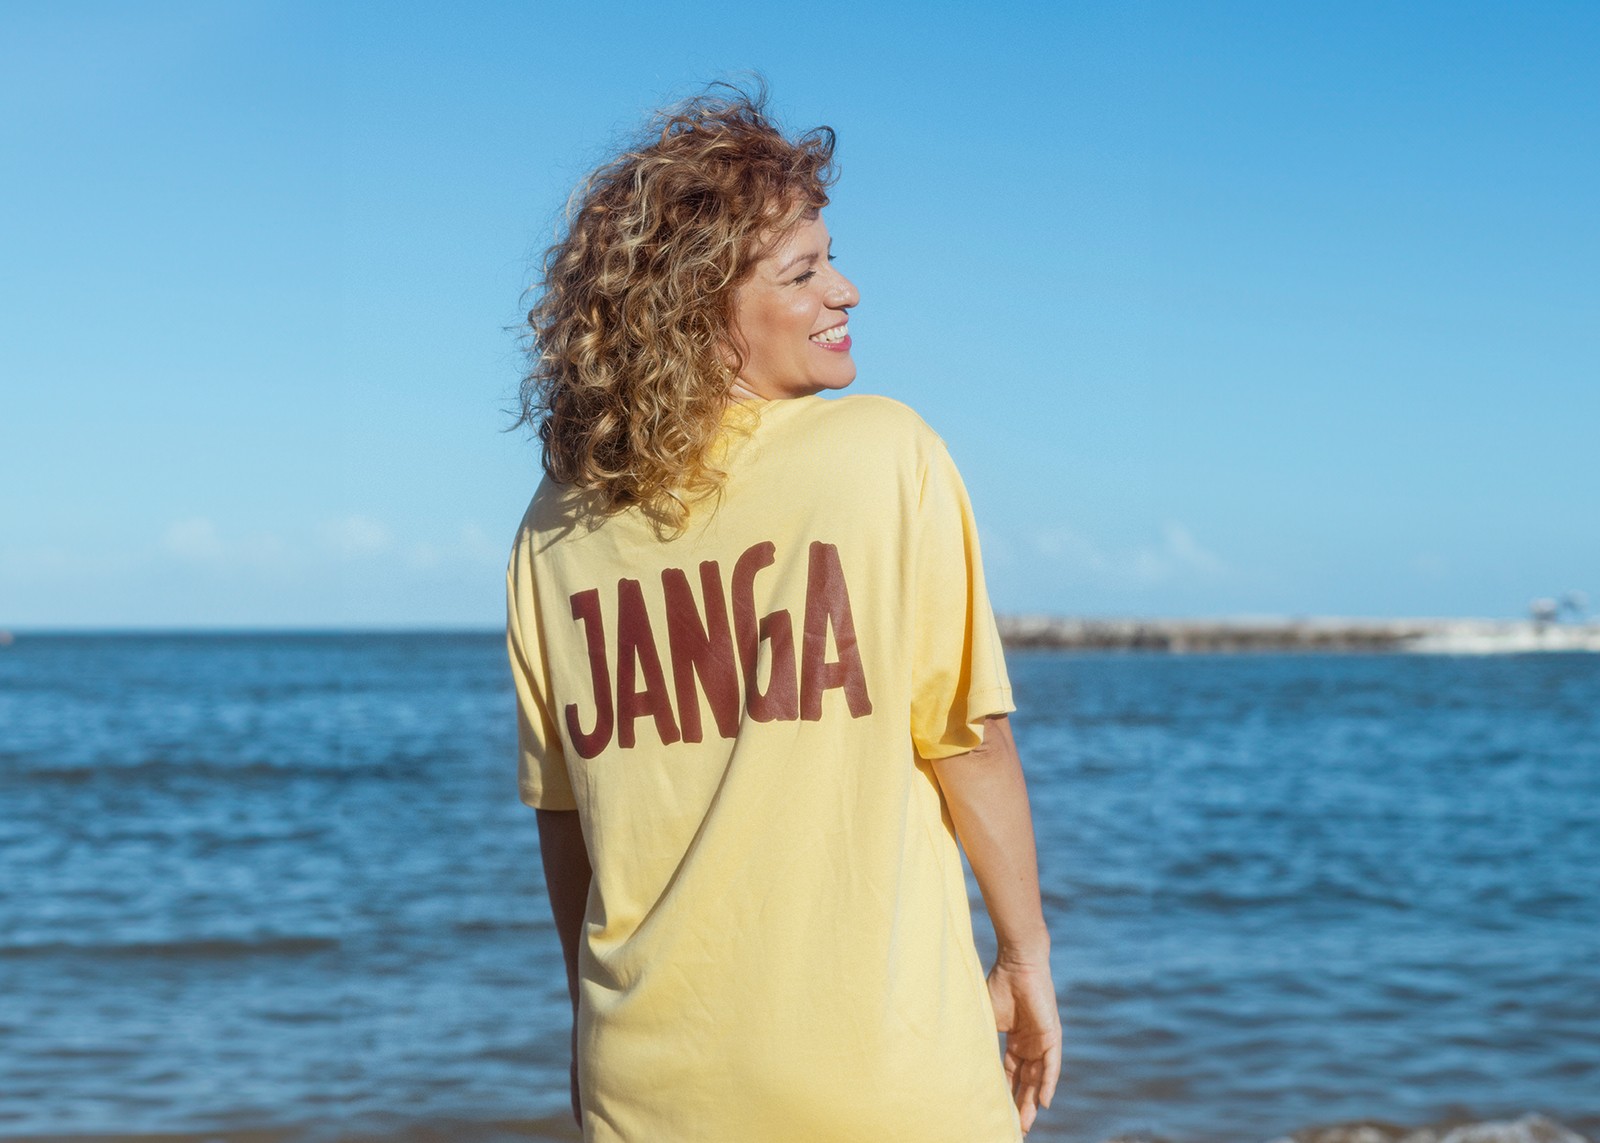 Ylana embarca na jornada existencial de ‘Janga’, álbum gerado por memórias litorâneas da infância em Pernambuco